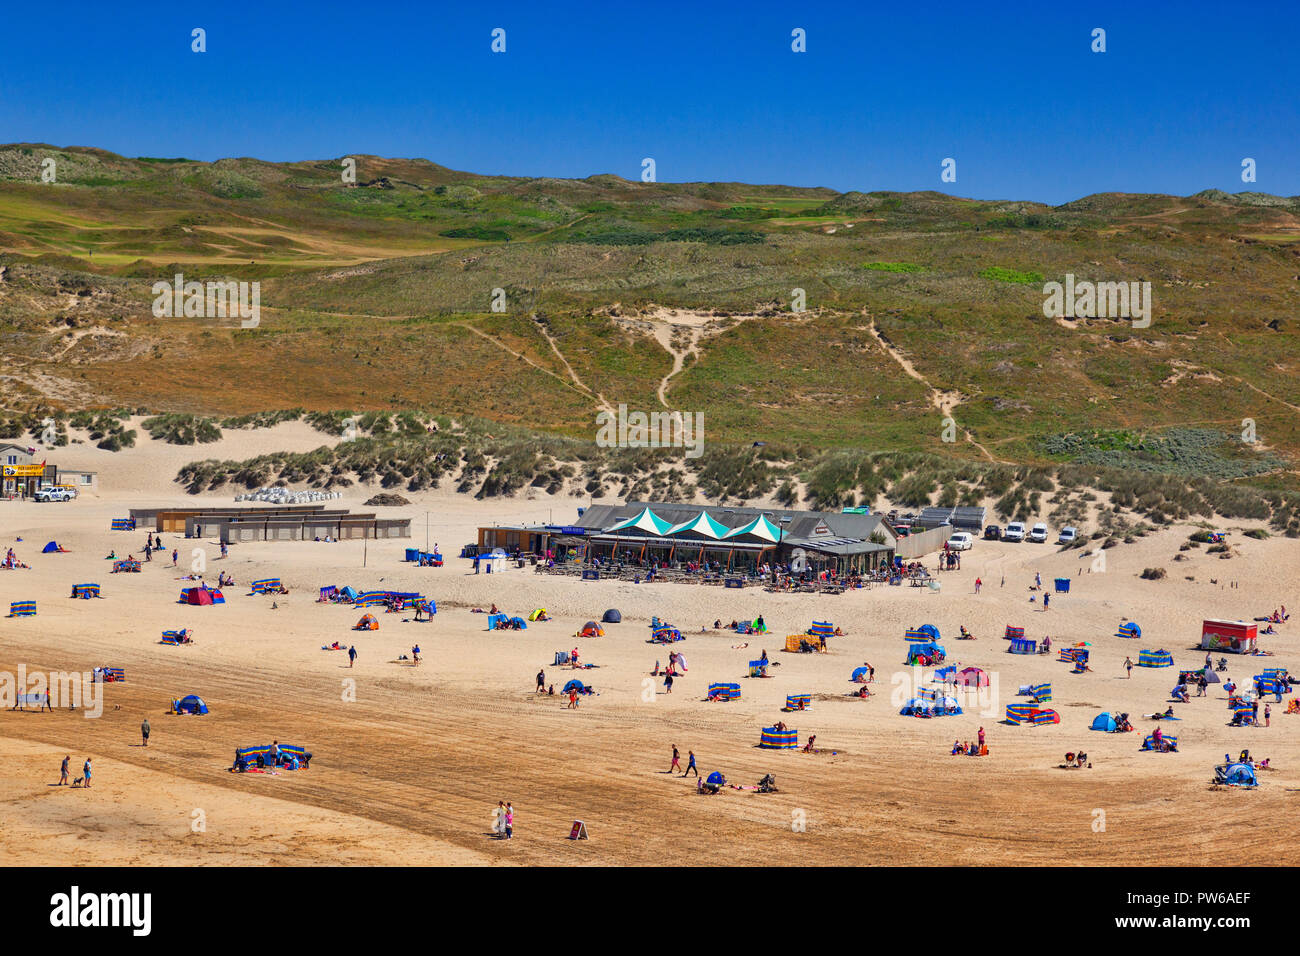 22 Giugno 2018: Perranporth Beach, Cornwall, Regno Unito - vacanzieri godendo di una calda giornata estiva sulla spiaggia. Foto Stock